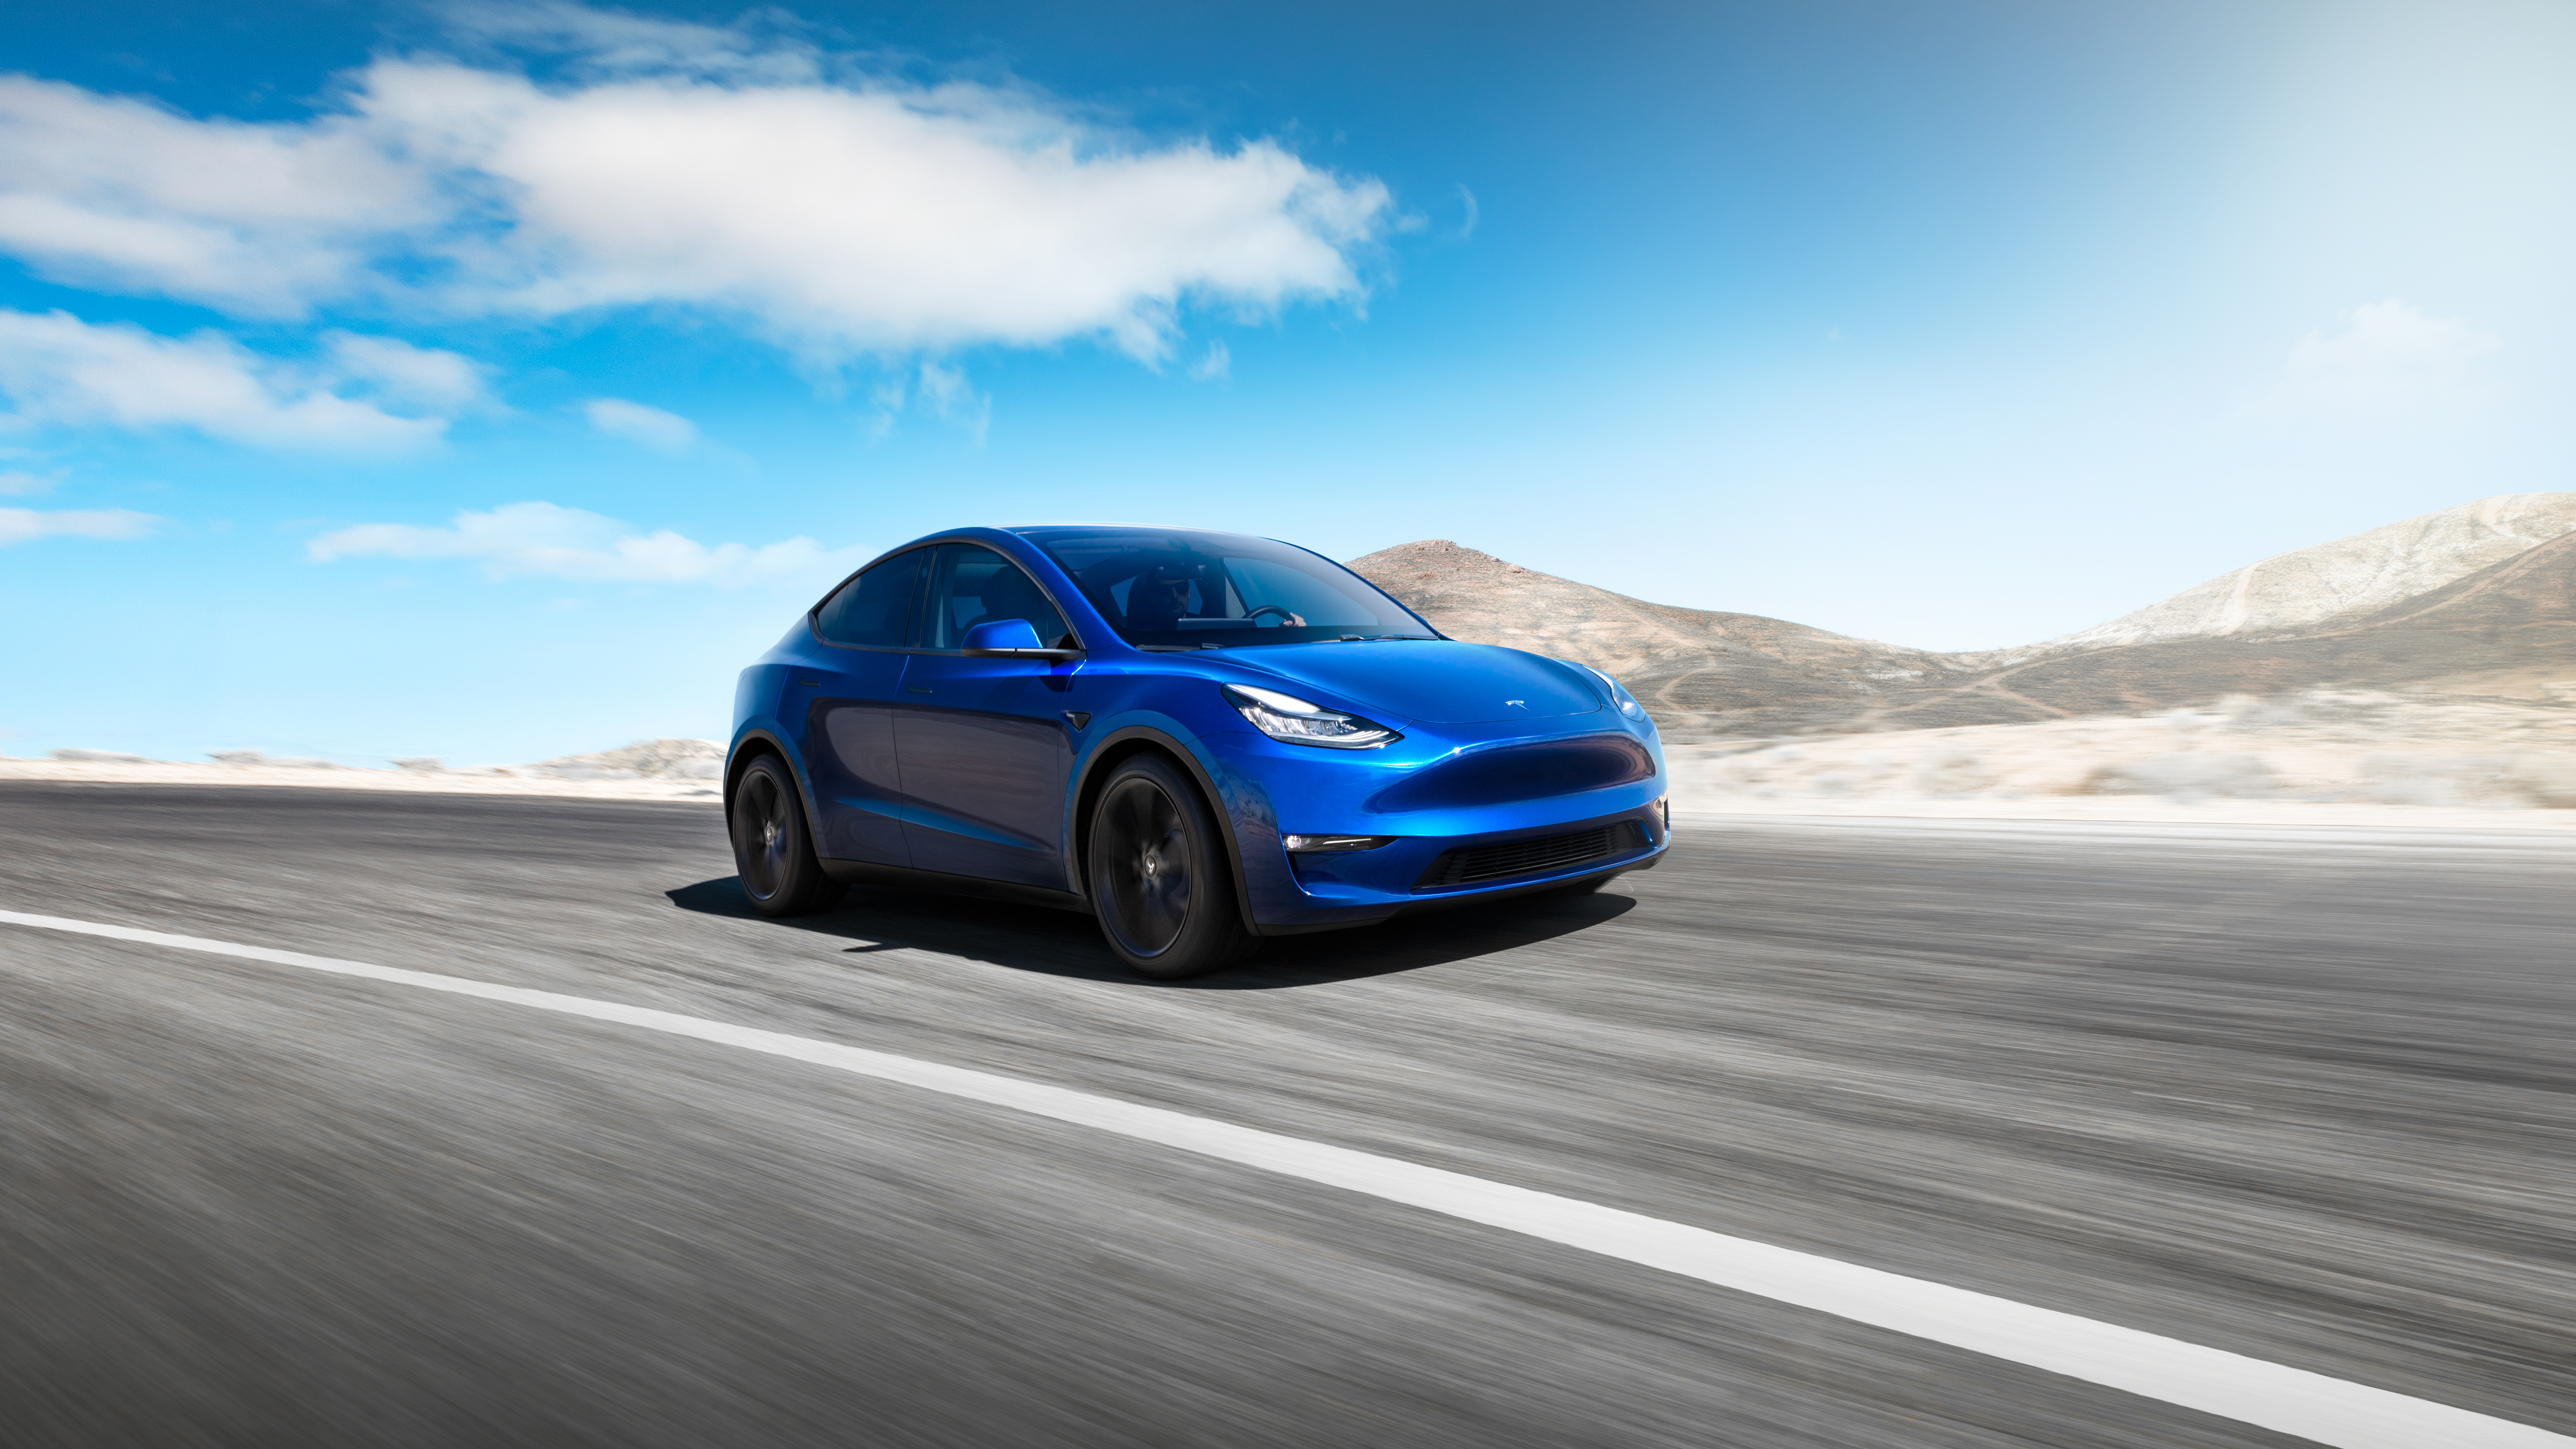 Modelos de luxo da Tesla, como o Y, estão puxando as vendas da empresa